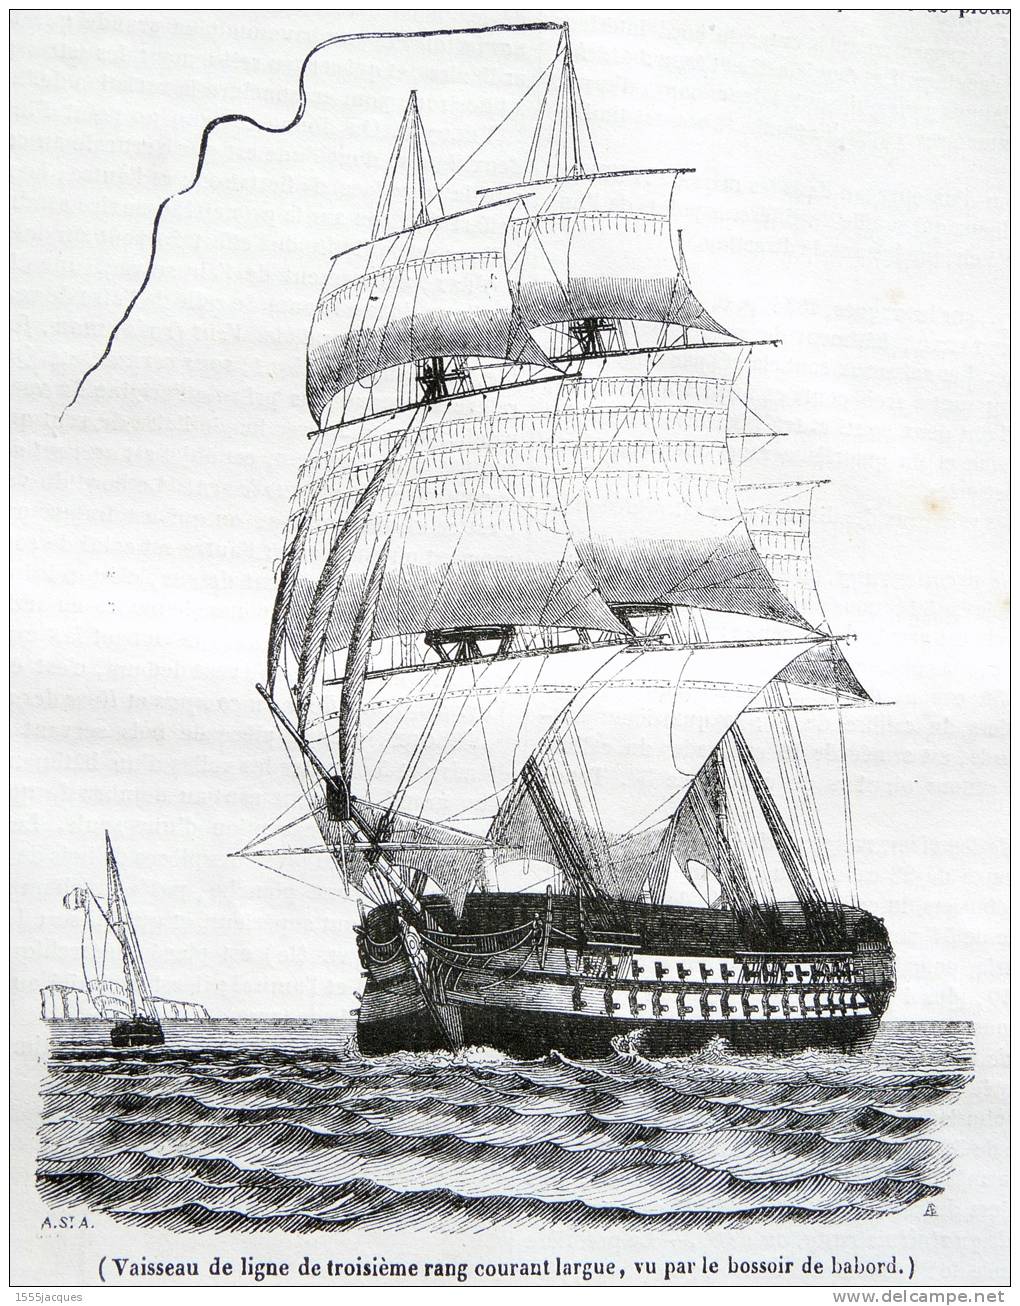 LE MAGASIN PITTORESQUE - NOV. 1842 - N°47 PANTHÈRE NOIRE - MARINE HONFLEUR LA HEVE YOUYOU VOILES YACHT TCHICKIRNÉ